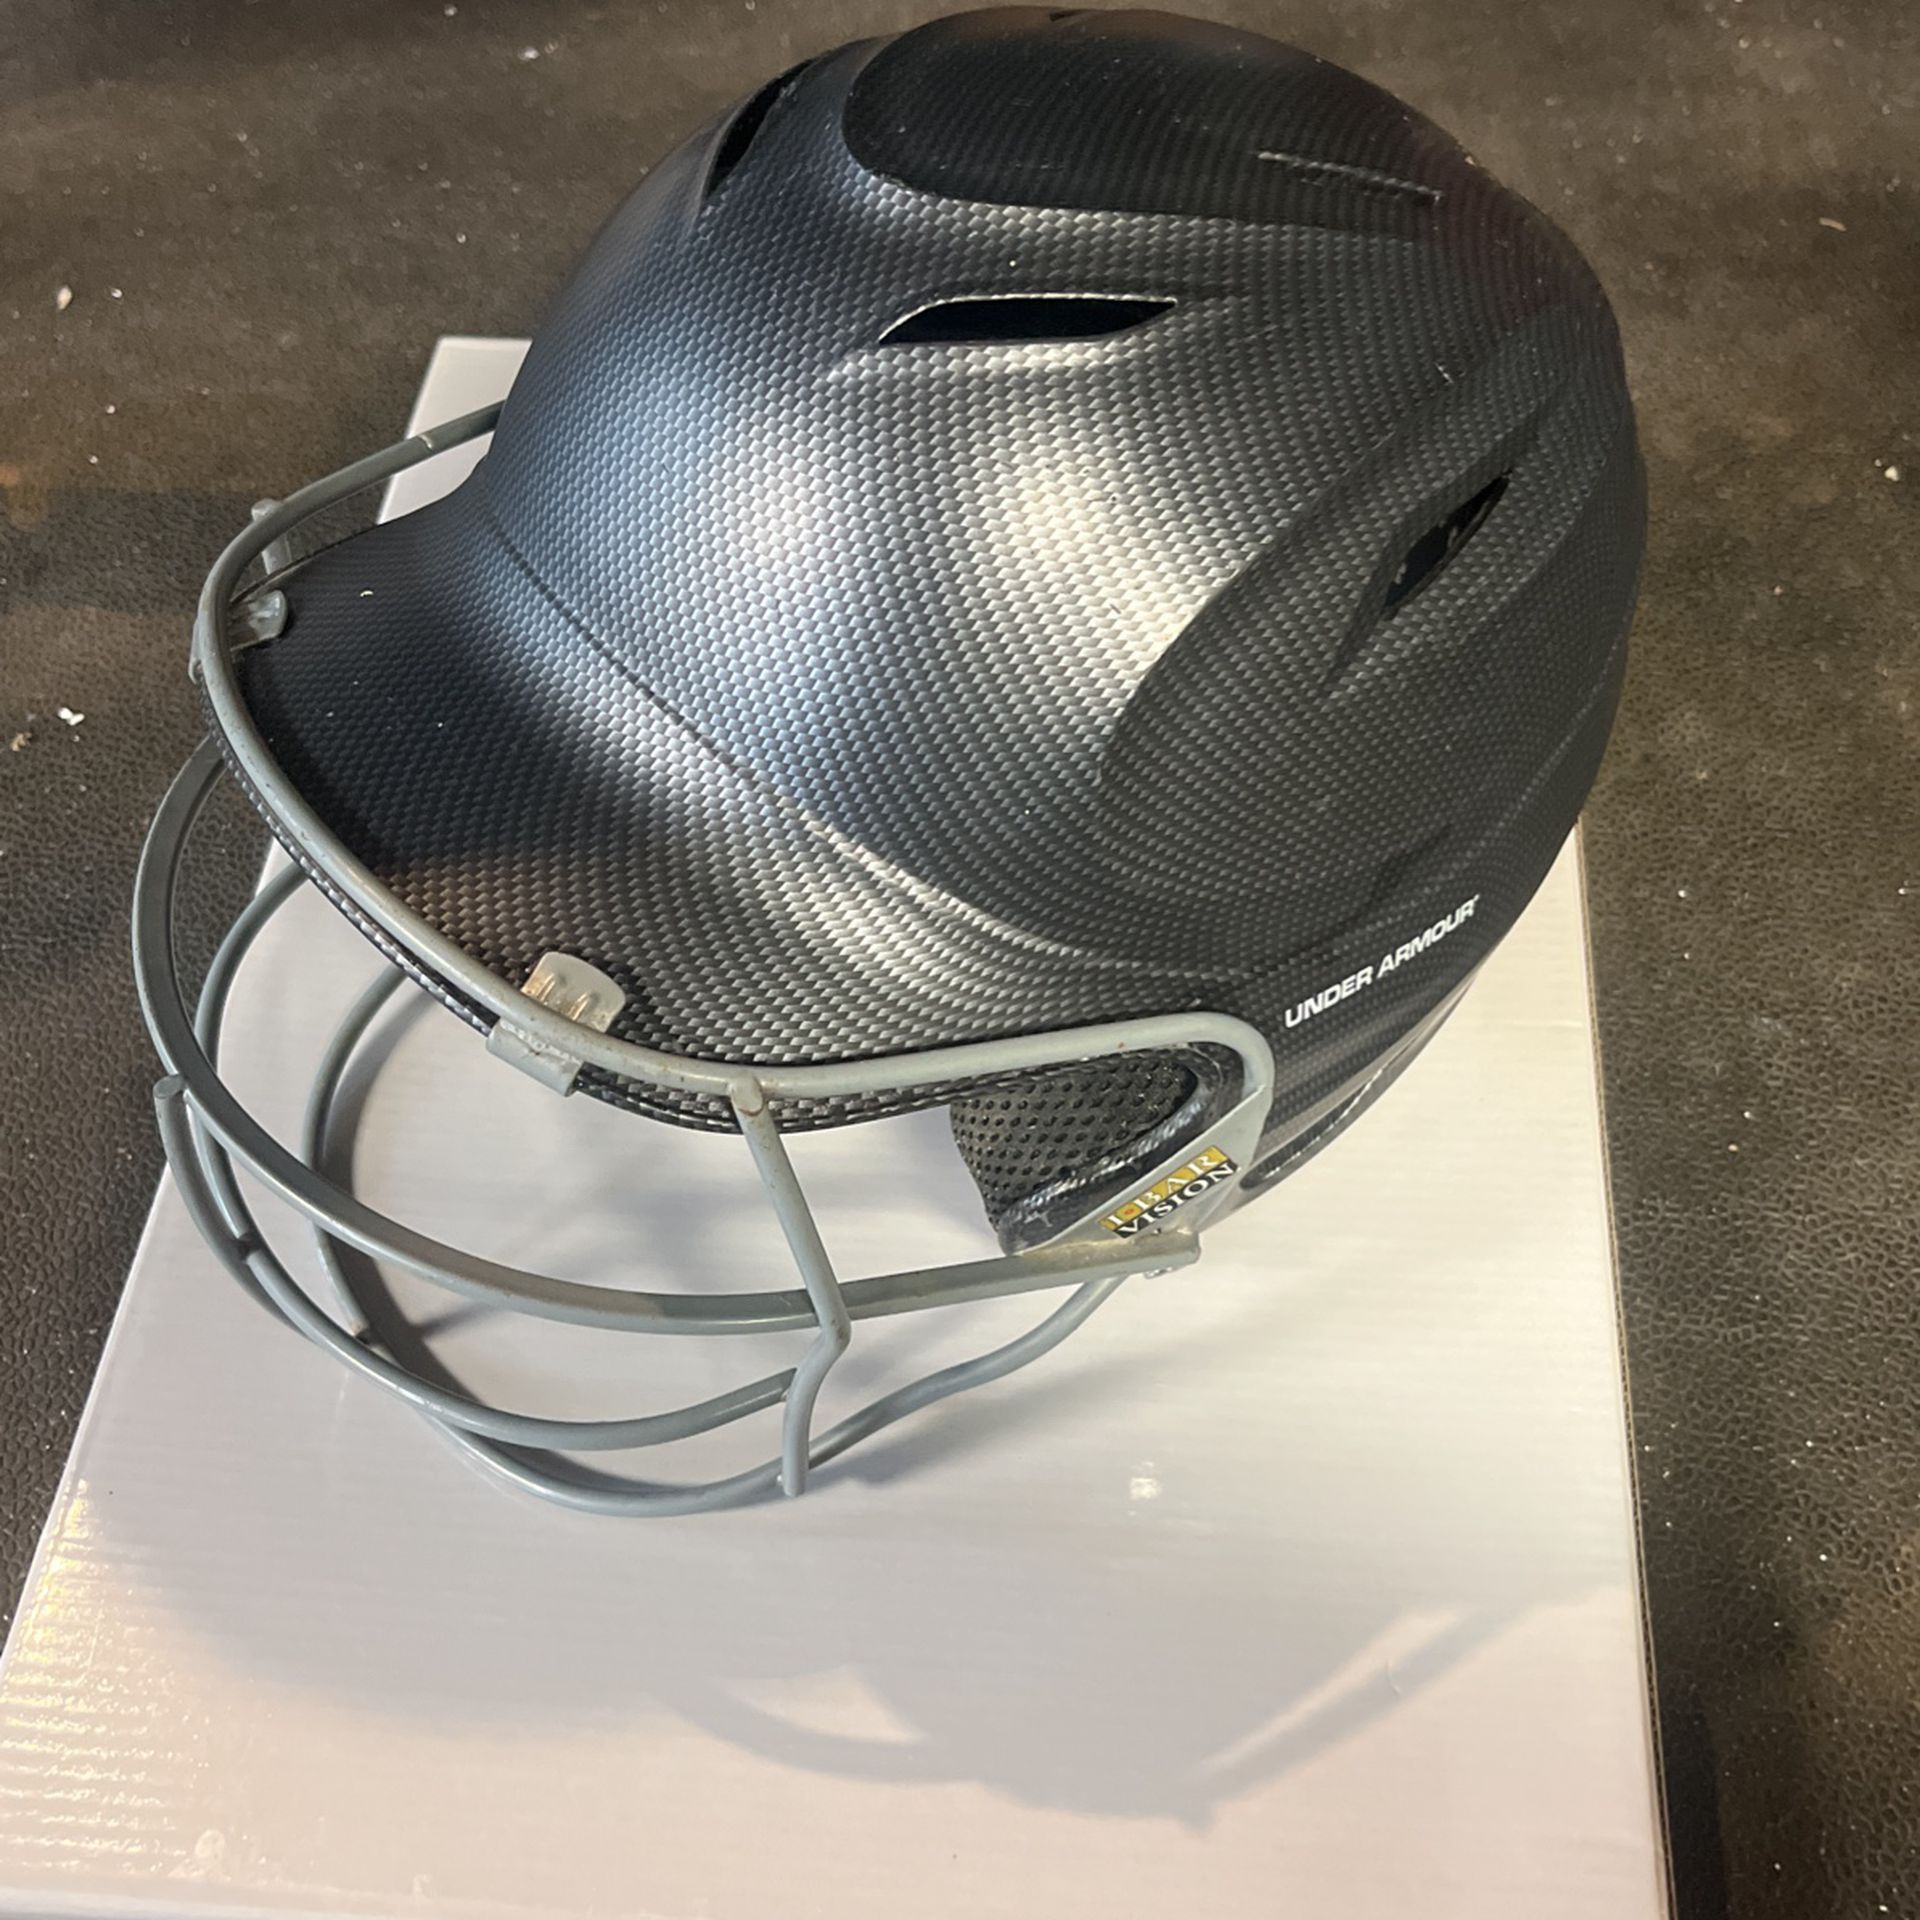 Under Armor Baseball Helmet Size 6 1/2 - 7 3/4